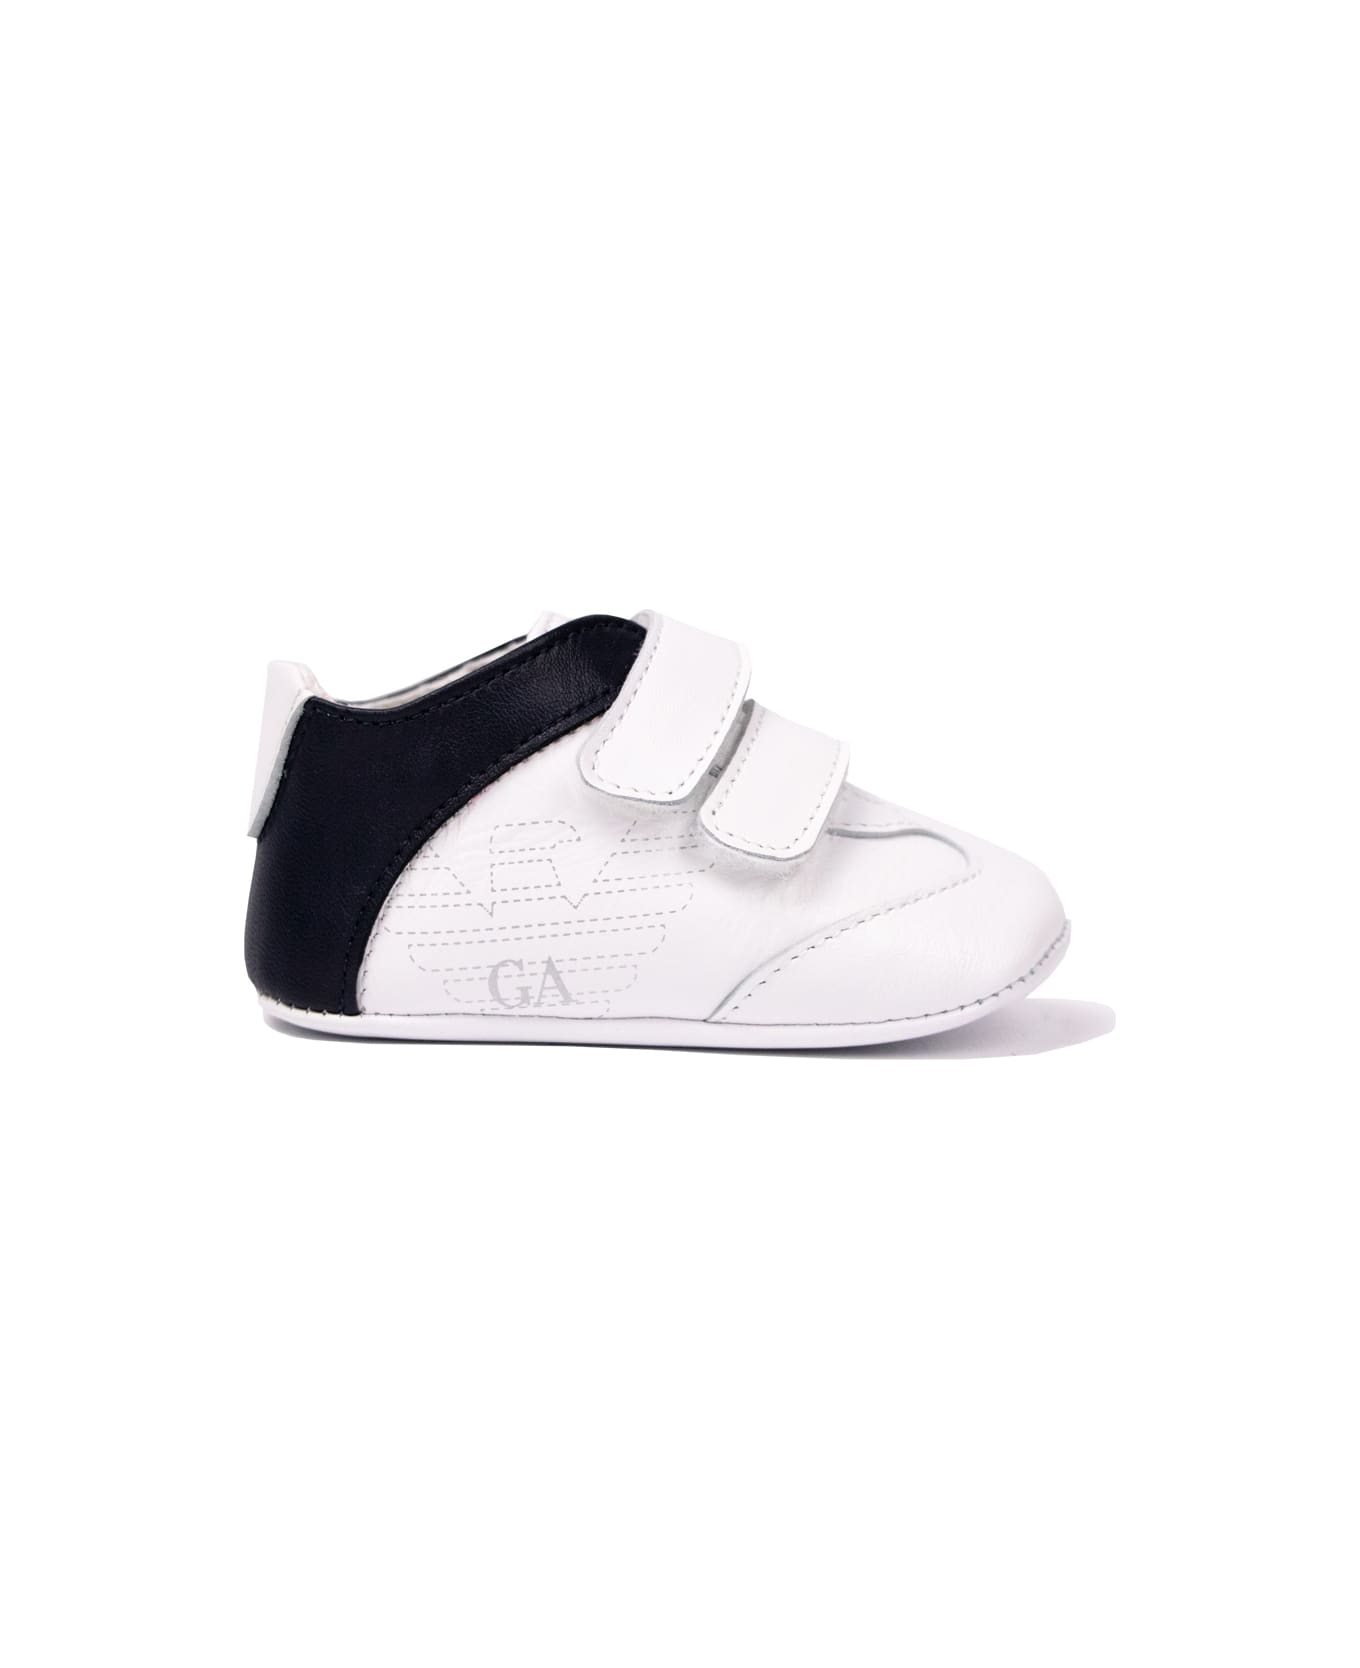 Emporio Armani Cradle Sneakers - White